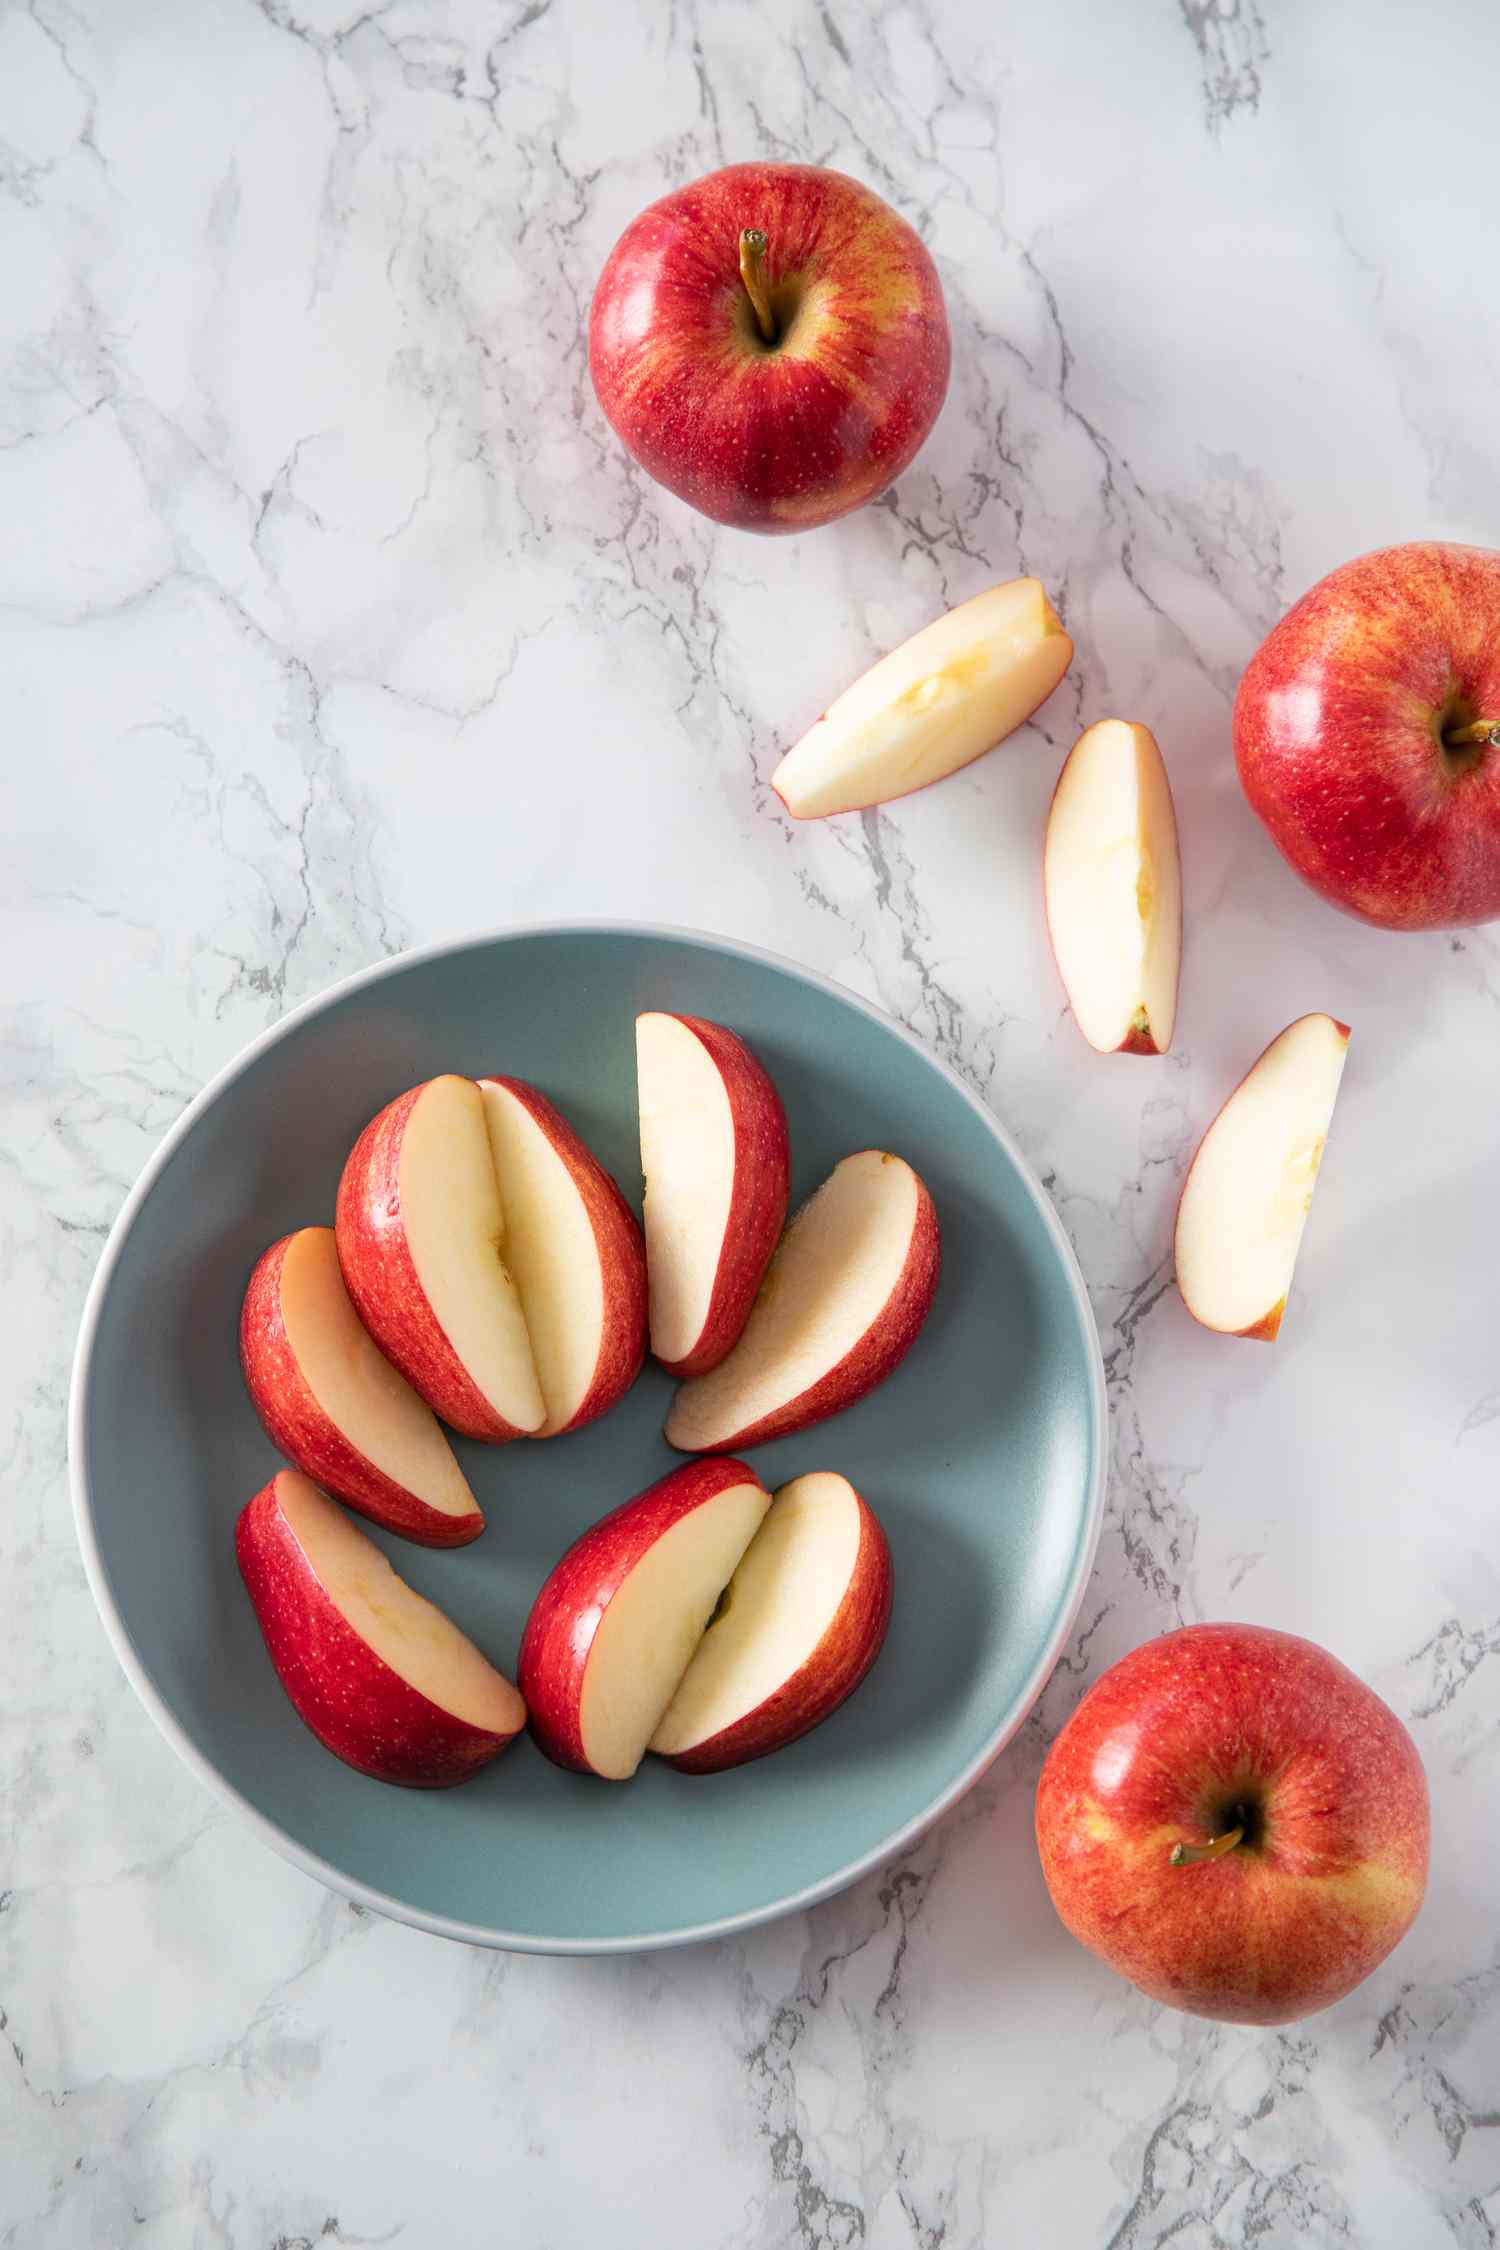 9 lý do tại sao bạn nên ăn một quả táo mỗi ngày - Ảnh 7